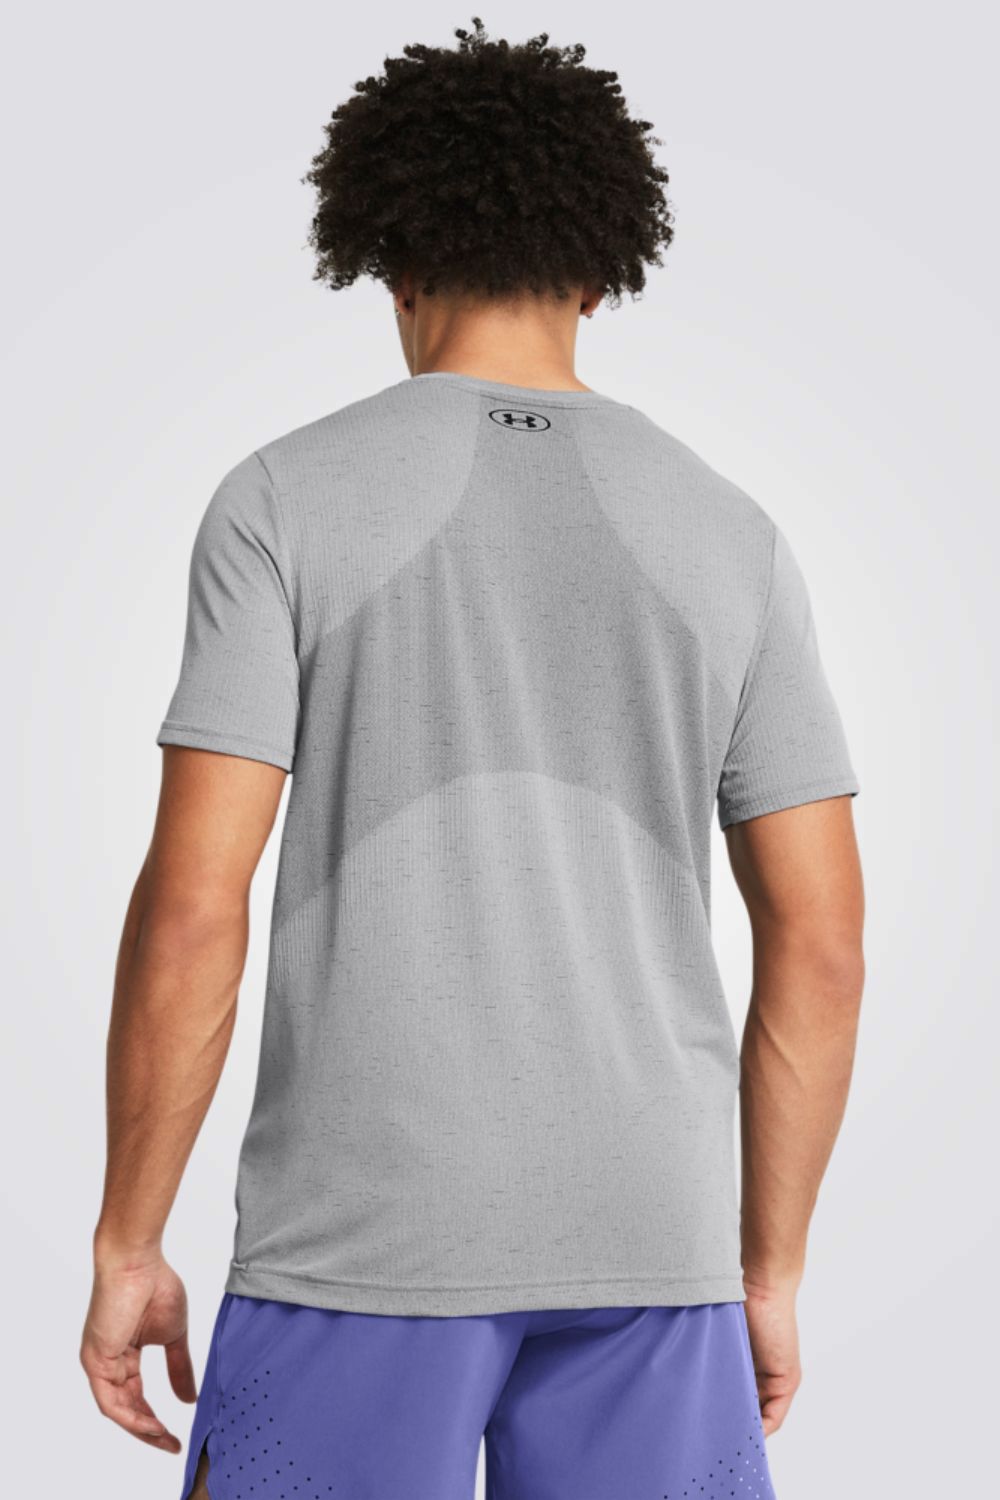 חולצה מבית המותג UNDER ARMOUR , עשויה מבד מנדף זיעה ששומר על הגוף שלך מאורר לאורך כל האימון.